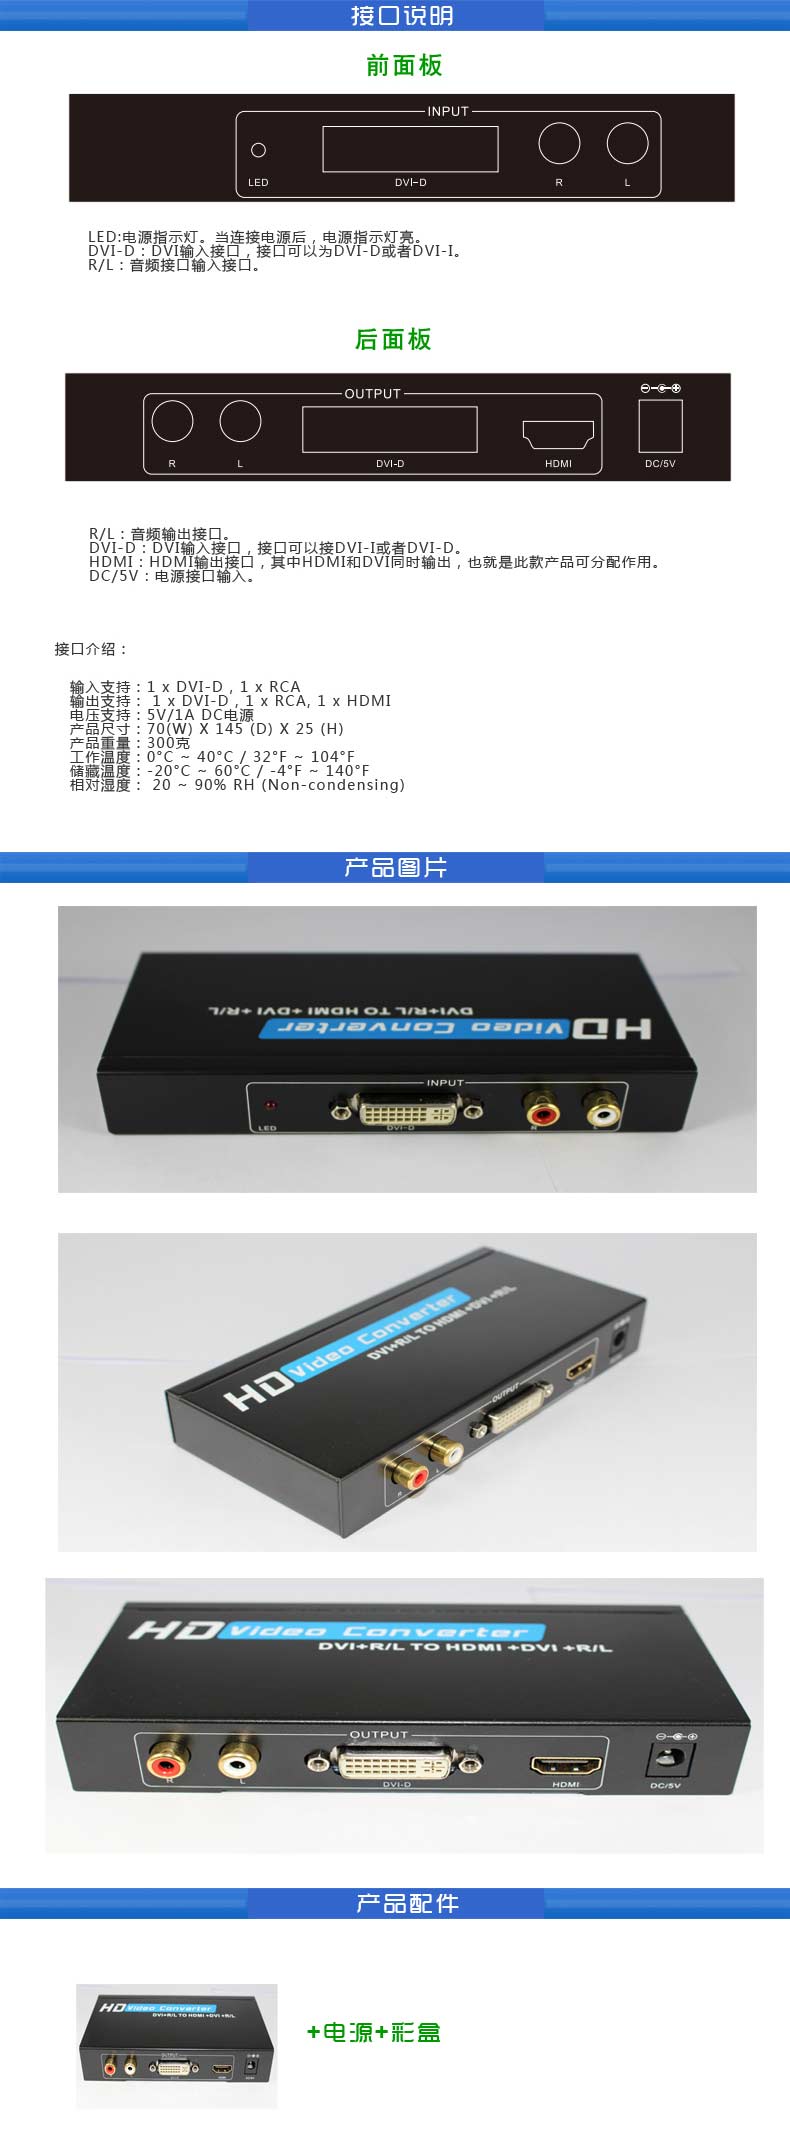 DVI转HDMI转换器详细介绍